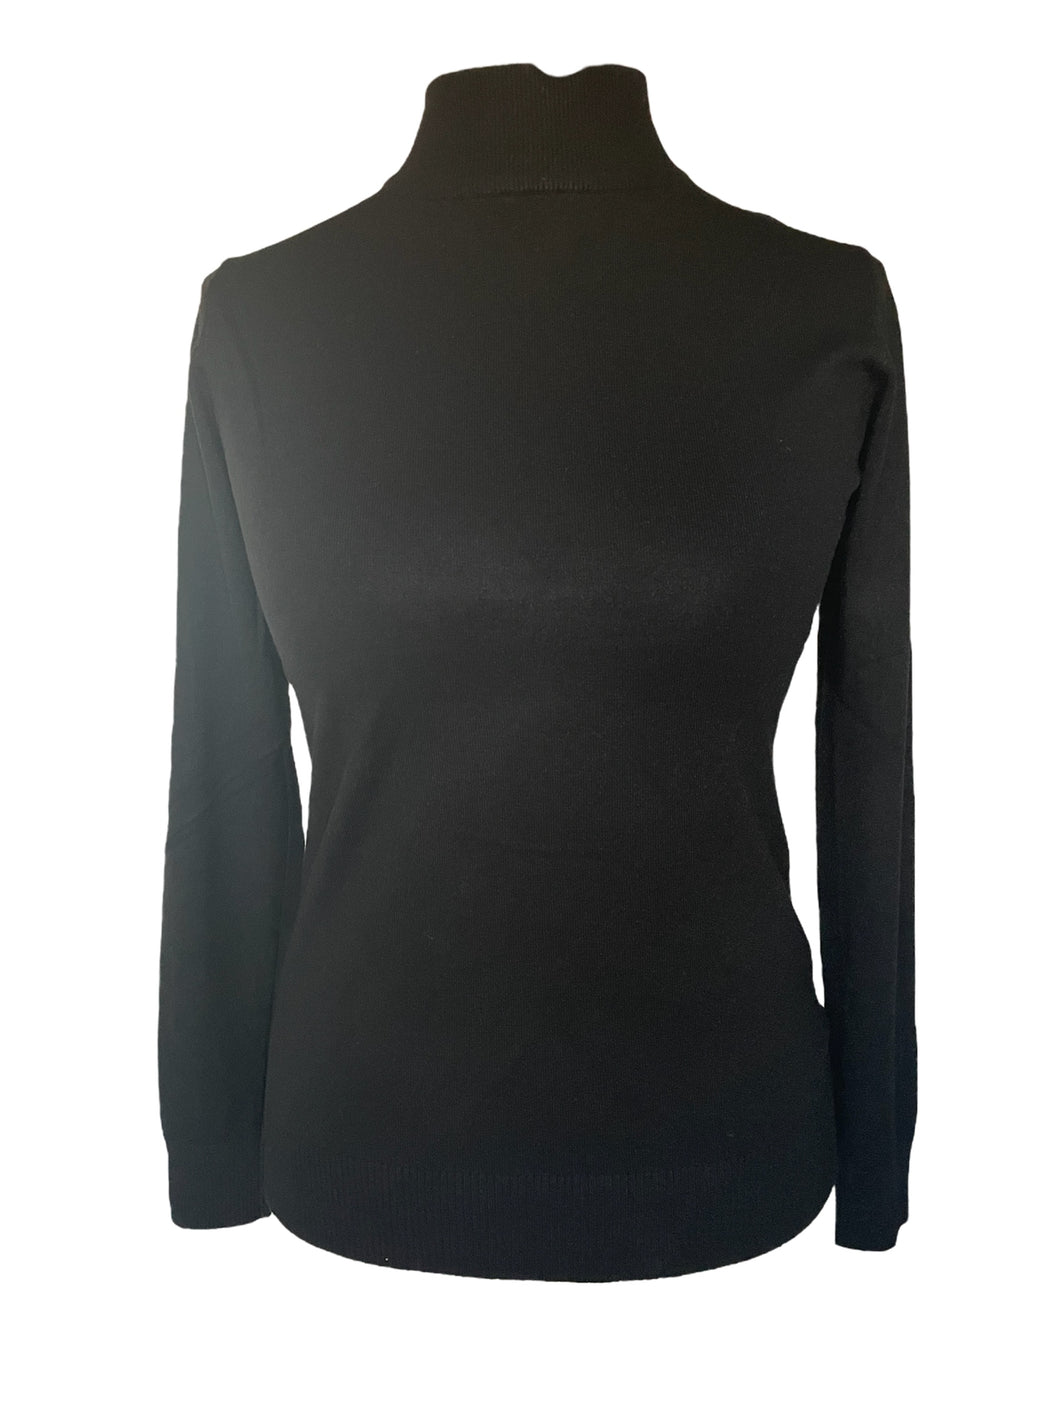 Trui Turtleneck heeft lange mouwen en is een heerlijk zachte dunne trui met cashmere. Deze trui is verkrijgbaar in verschillende kleuren: ecru, zwart, kobalt.